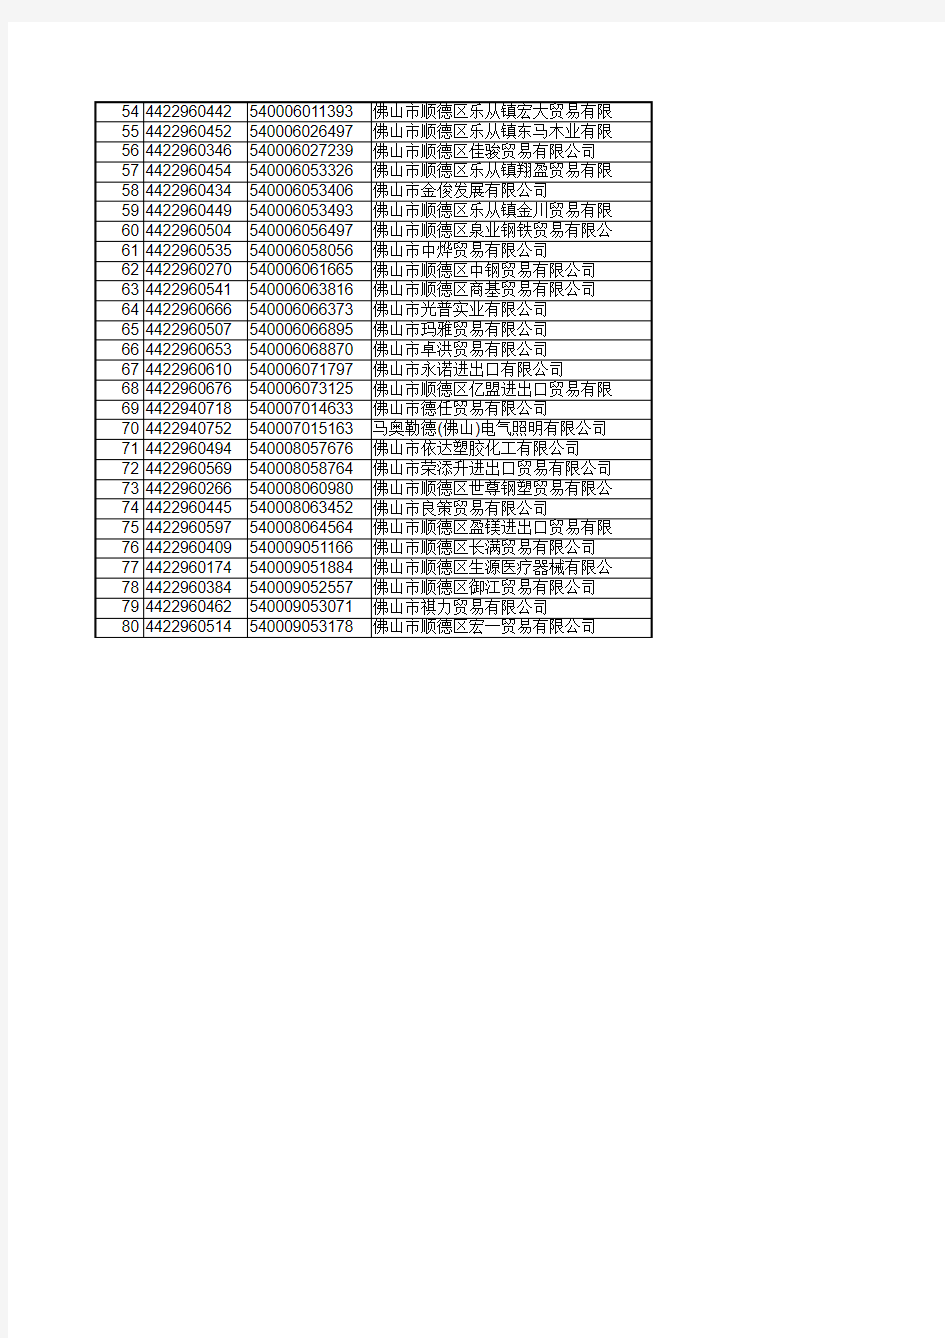 新办外贸企业名单 - 广东省国家税务局